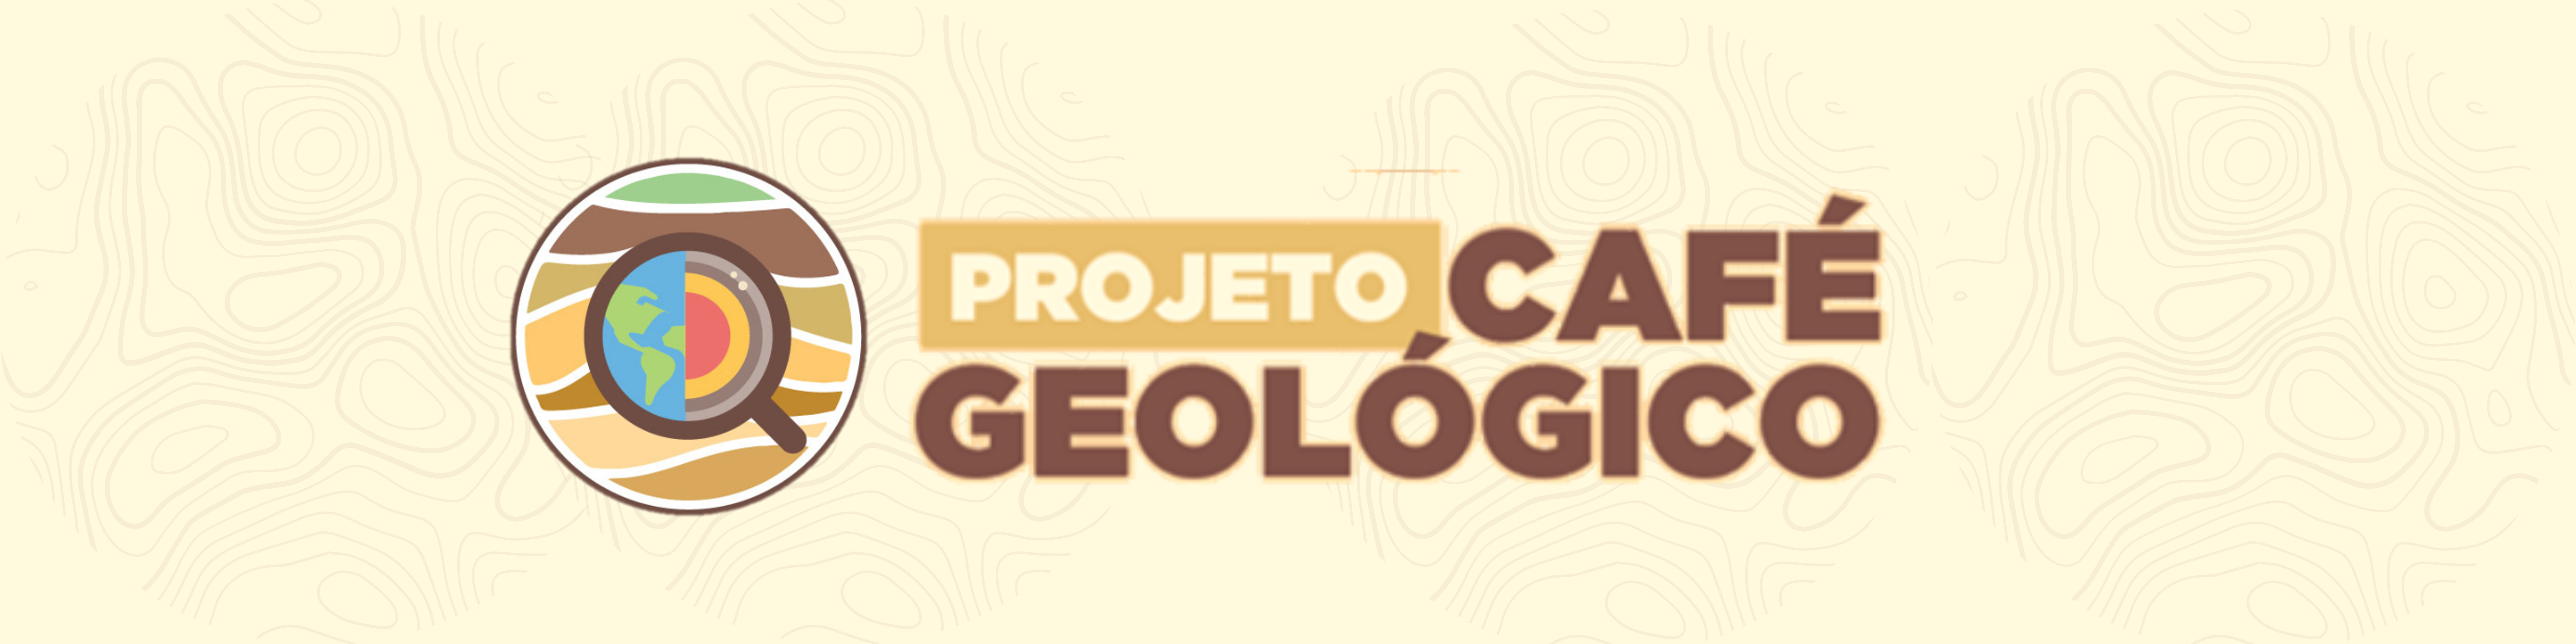 Café Geológico - Serviço Geológico do Brasil